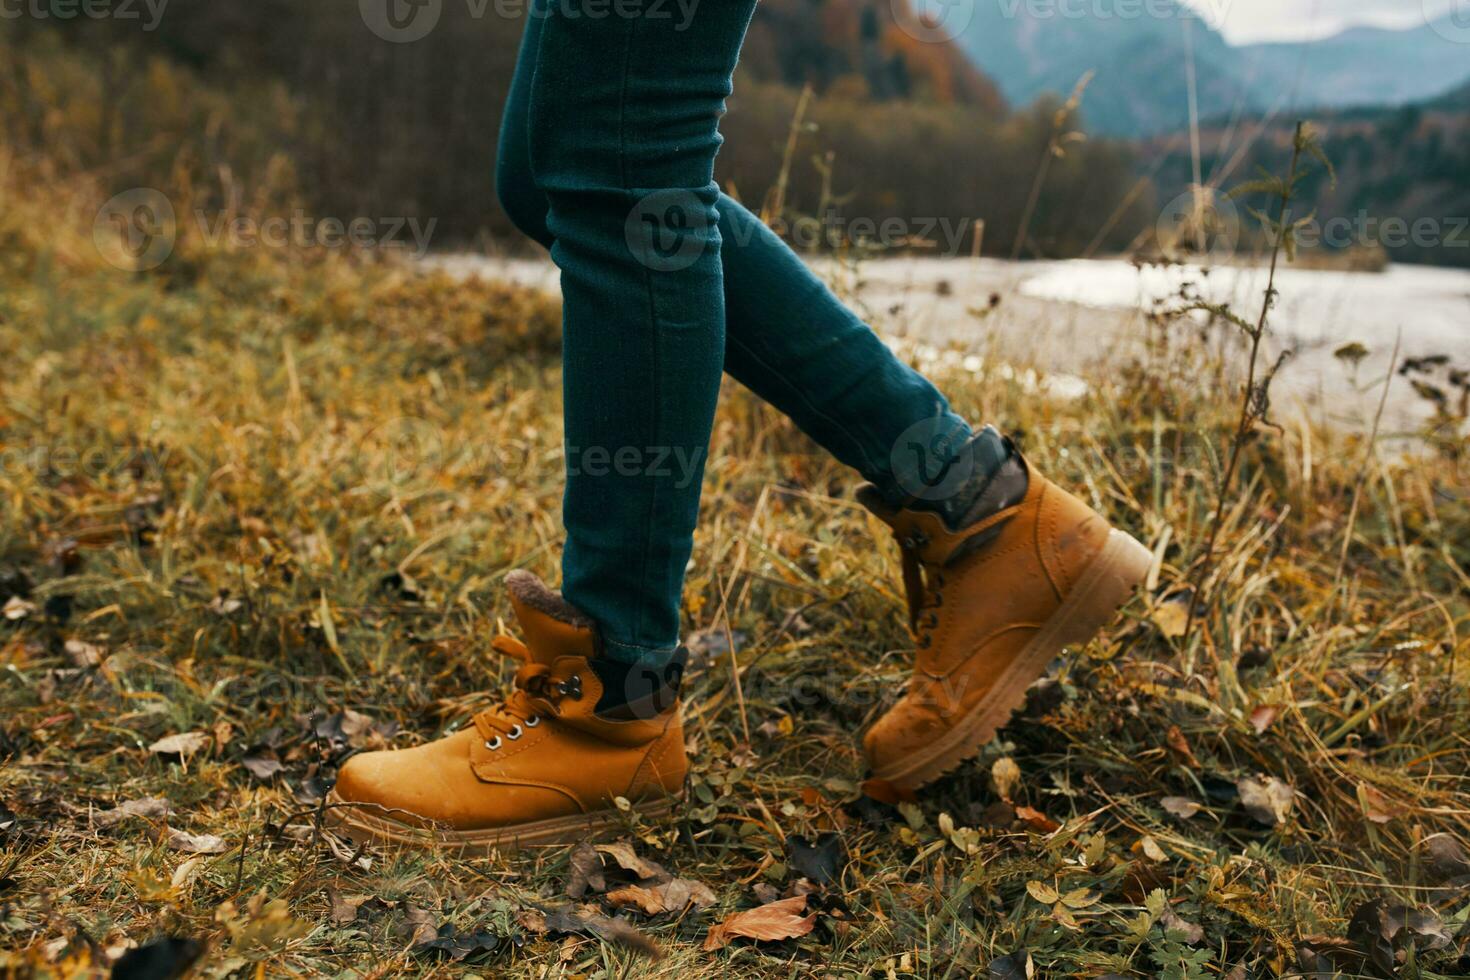 femelle jambes dans bottes et jeans sur la nature dans l'automne dans le montagnes photo